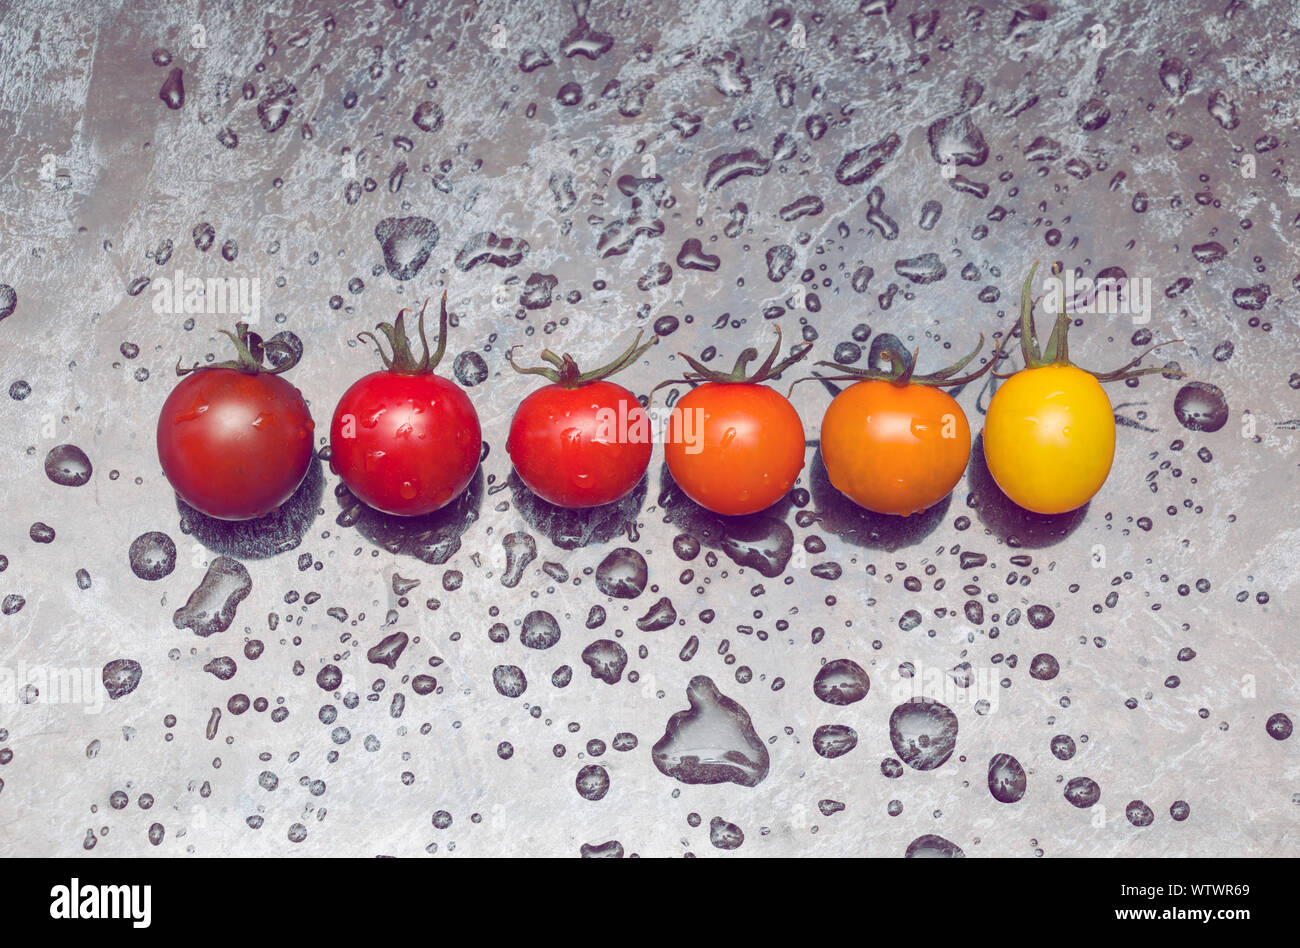 La perfetta gradazione di colori linea di diversi tipi di pomodori sulla superficie bagnata Foto Stock